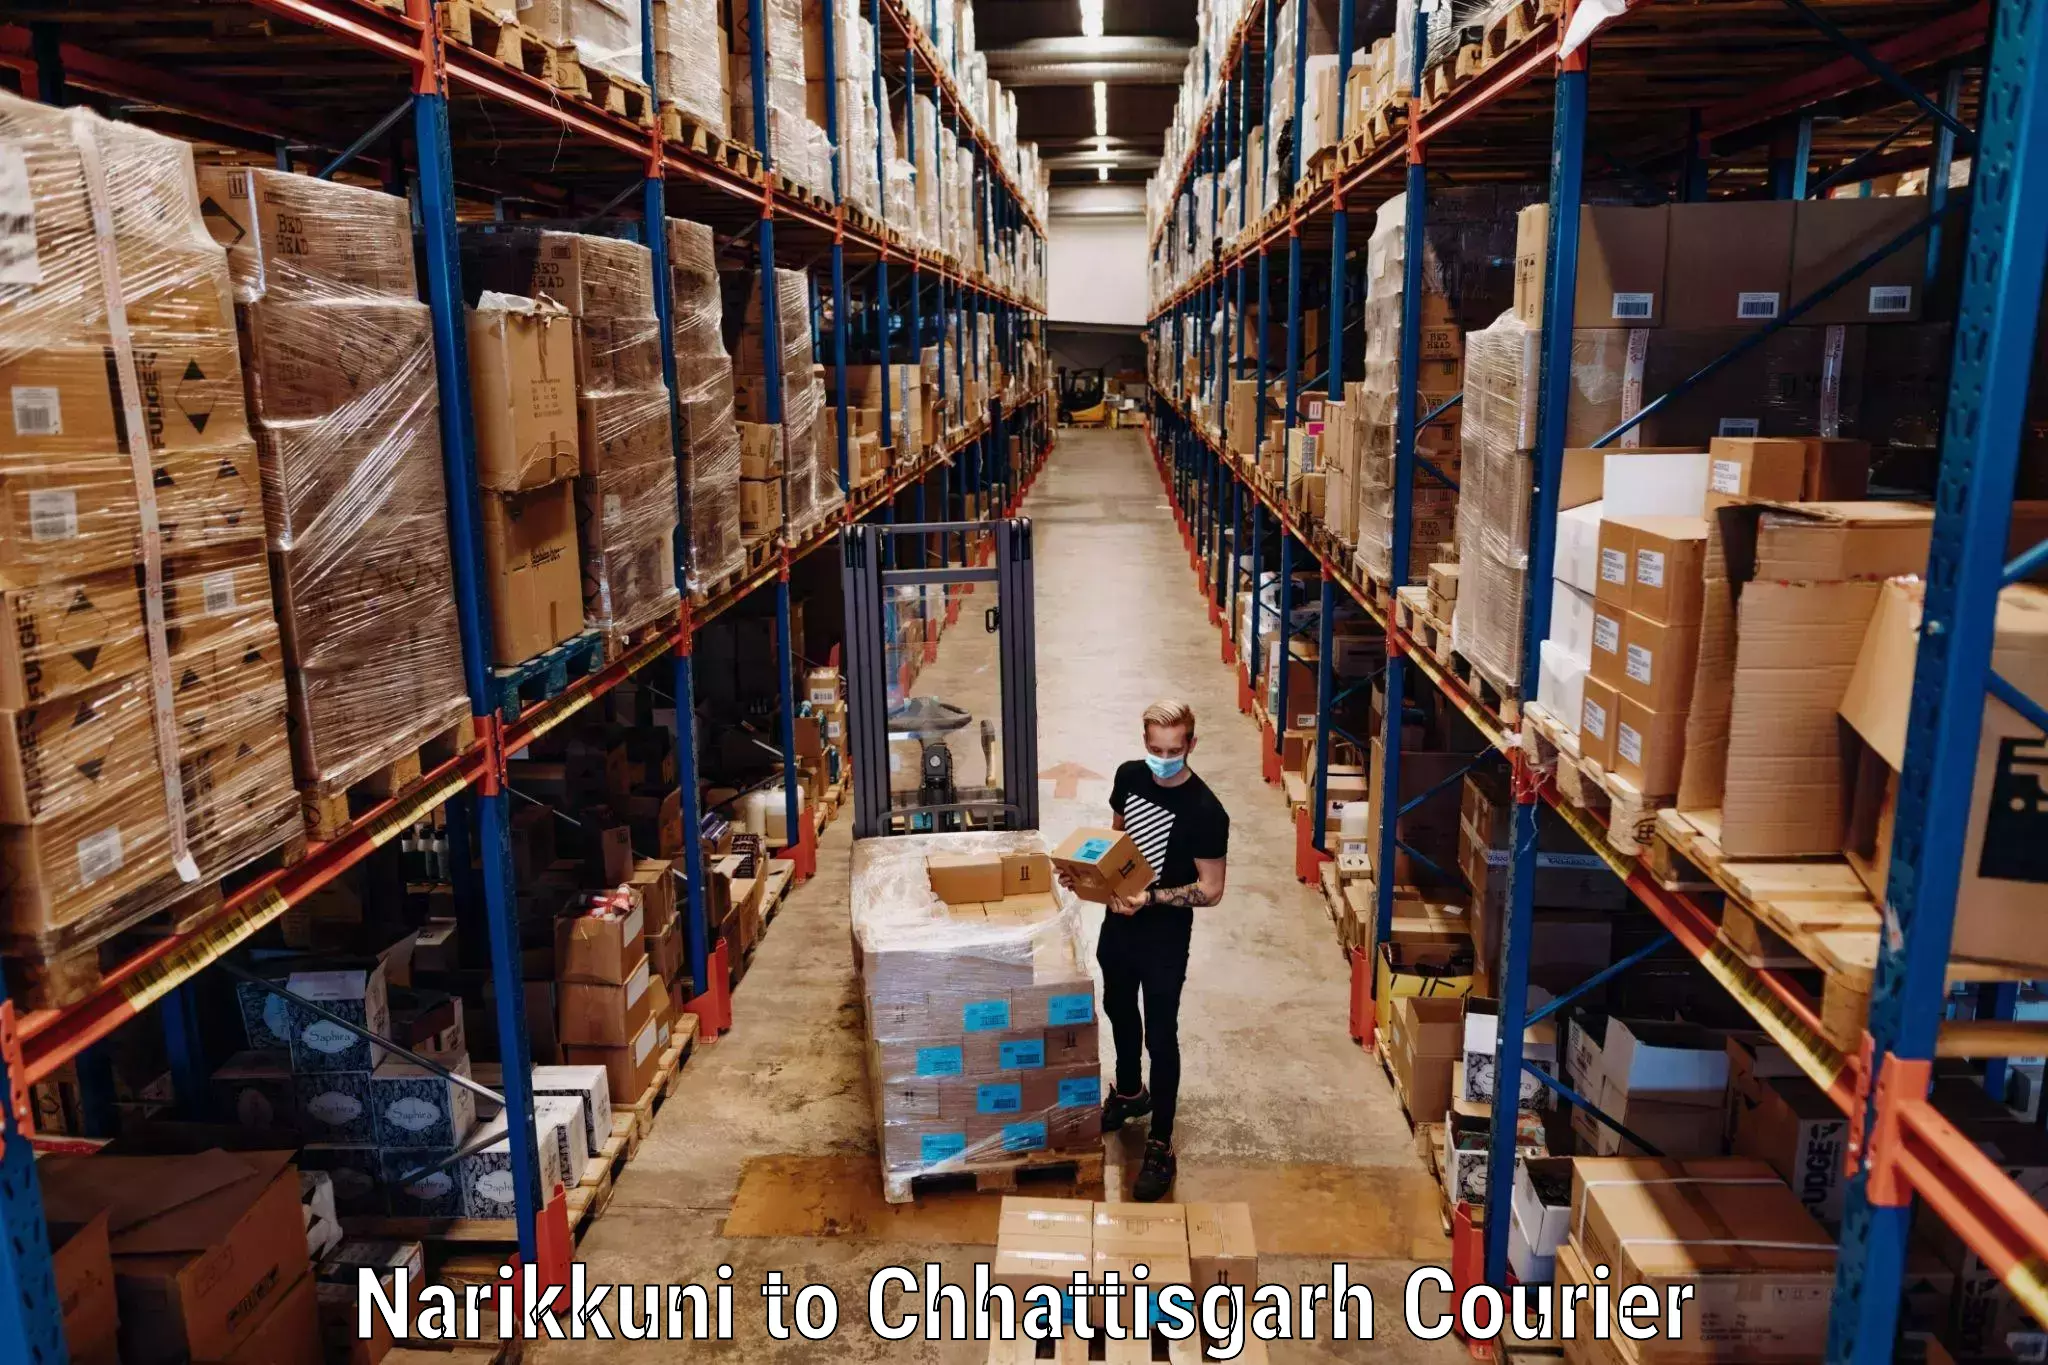 Luggage delivery providers Narikkuni to Chhattisgarh